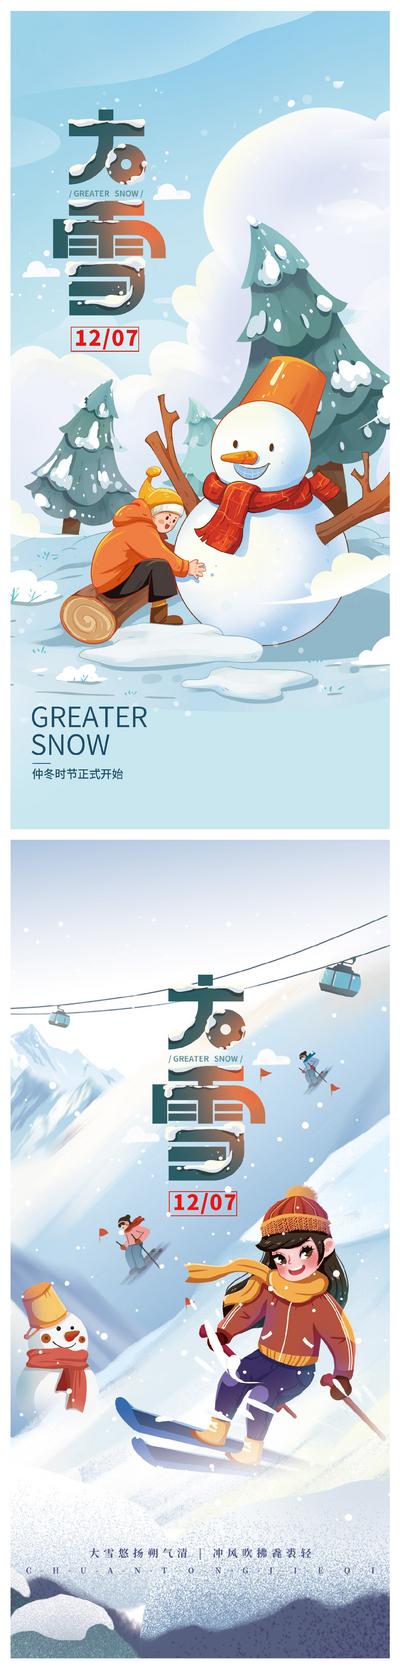 南门网 大雪系列海报